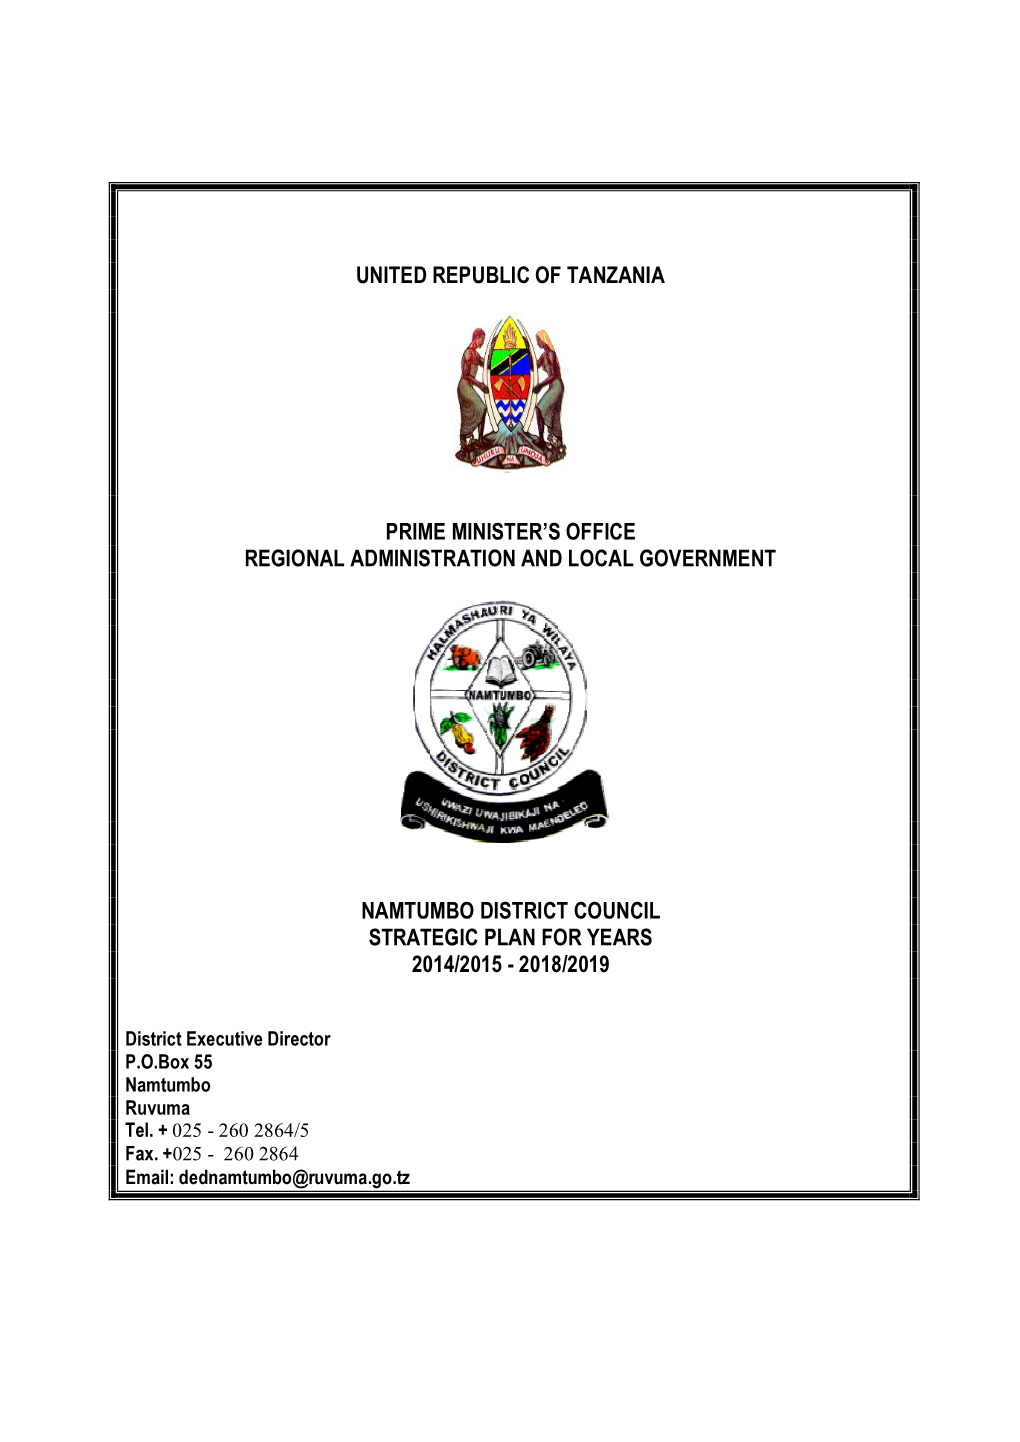 United Republic of Tanzania Prime Minister's Office